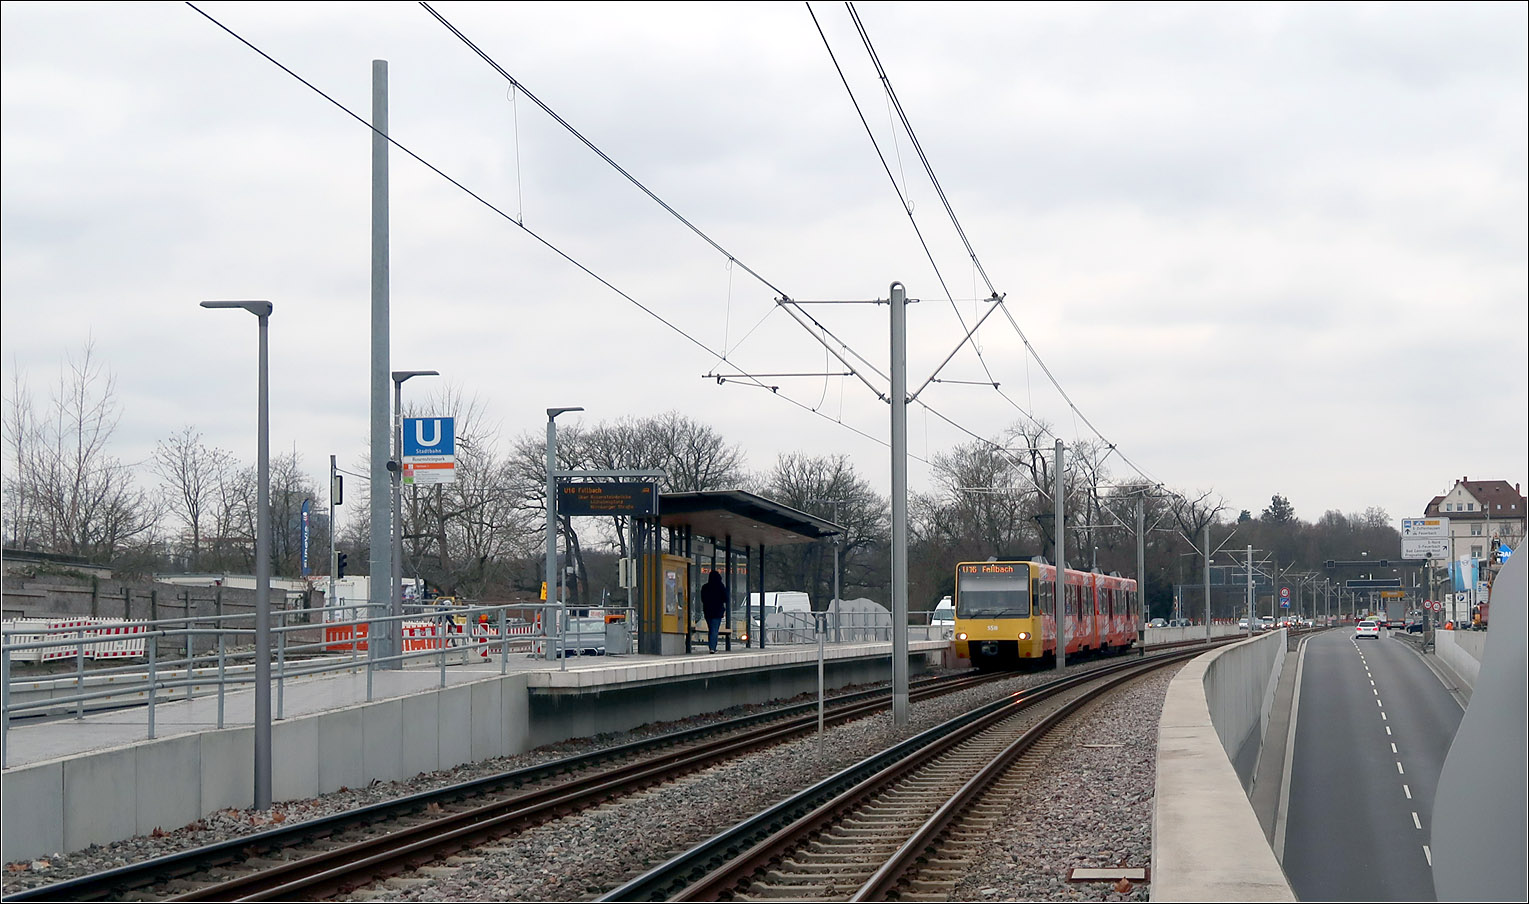 Neugebaut -

... wurde die Stadtbahnhaltestelle 'Rosensteinpark' der Stadtbahnlinien U13 und U16 in der Pragstraße aufgrund des Baus des Rosensteintunnels der Bundesstraße 10. In diesem Bereich befinden sich jetzt die oberen Portale des Straßentunnels, die Bahnsteige der Station wurden versetzt angeordnet.
Rechts im Bild die Ausfahrtsrampe des Tunnels.

Stuttgart, 28.02.2023 (M)